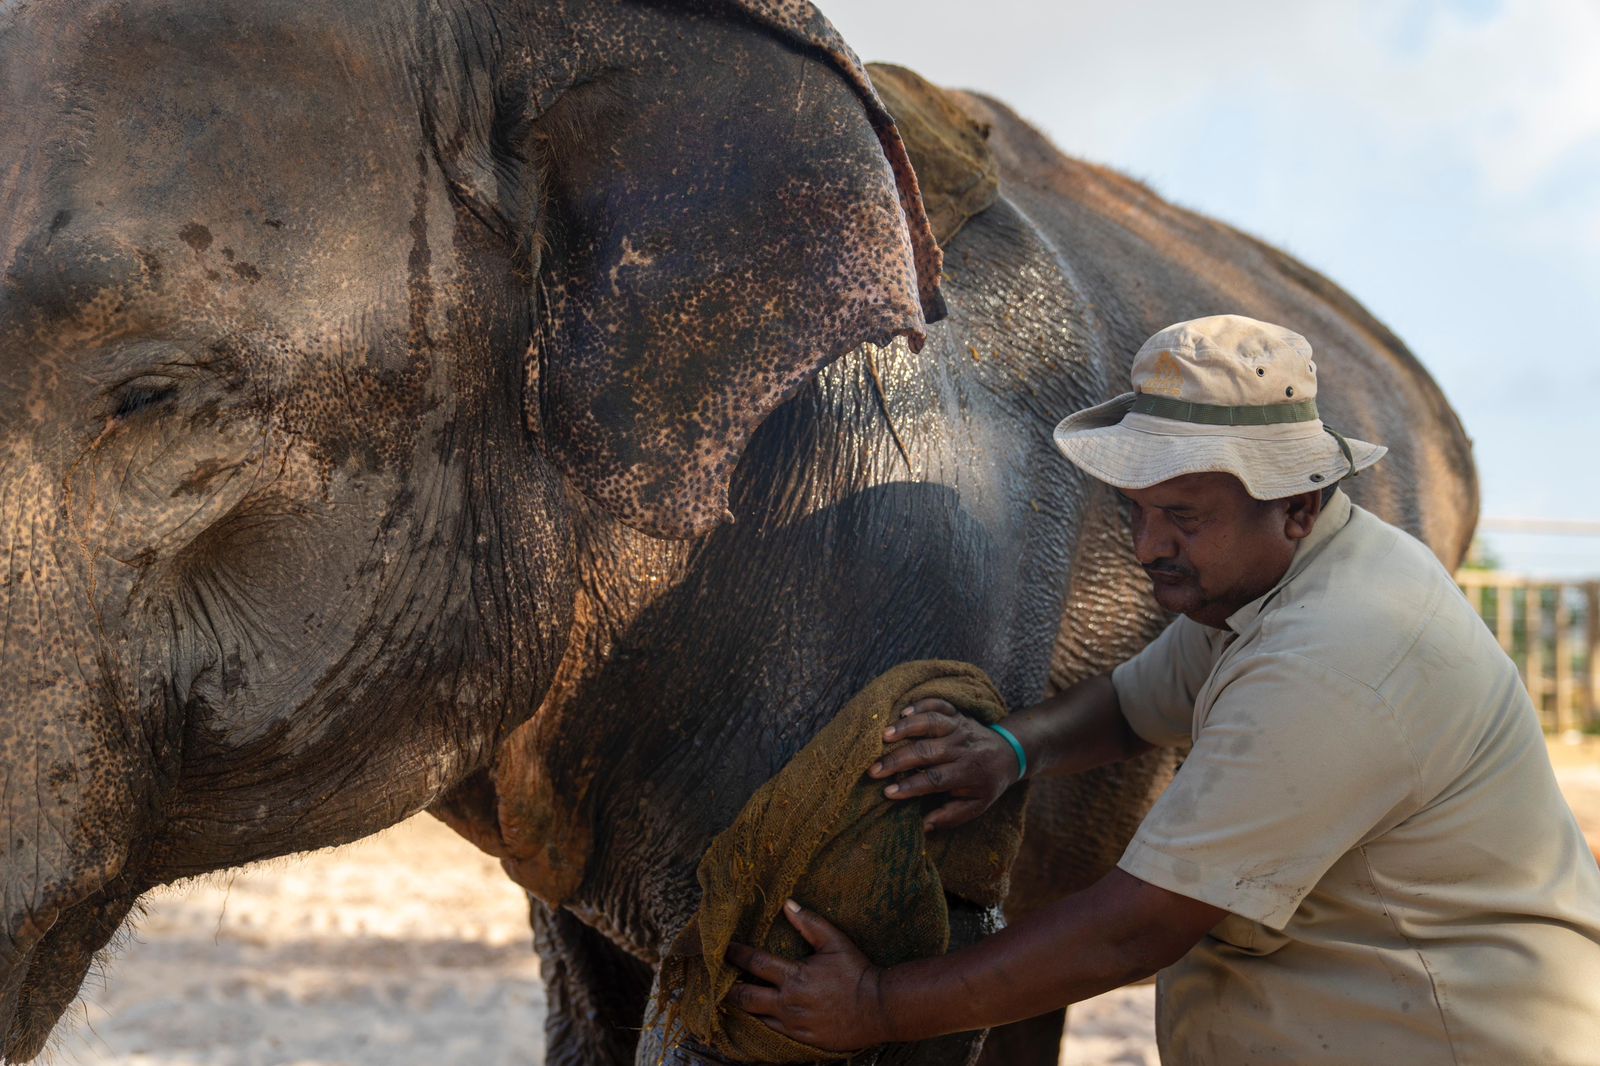 Vantara staff take care of Elephant Pratima